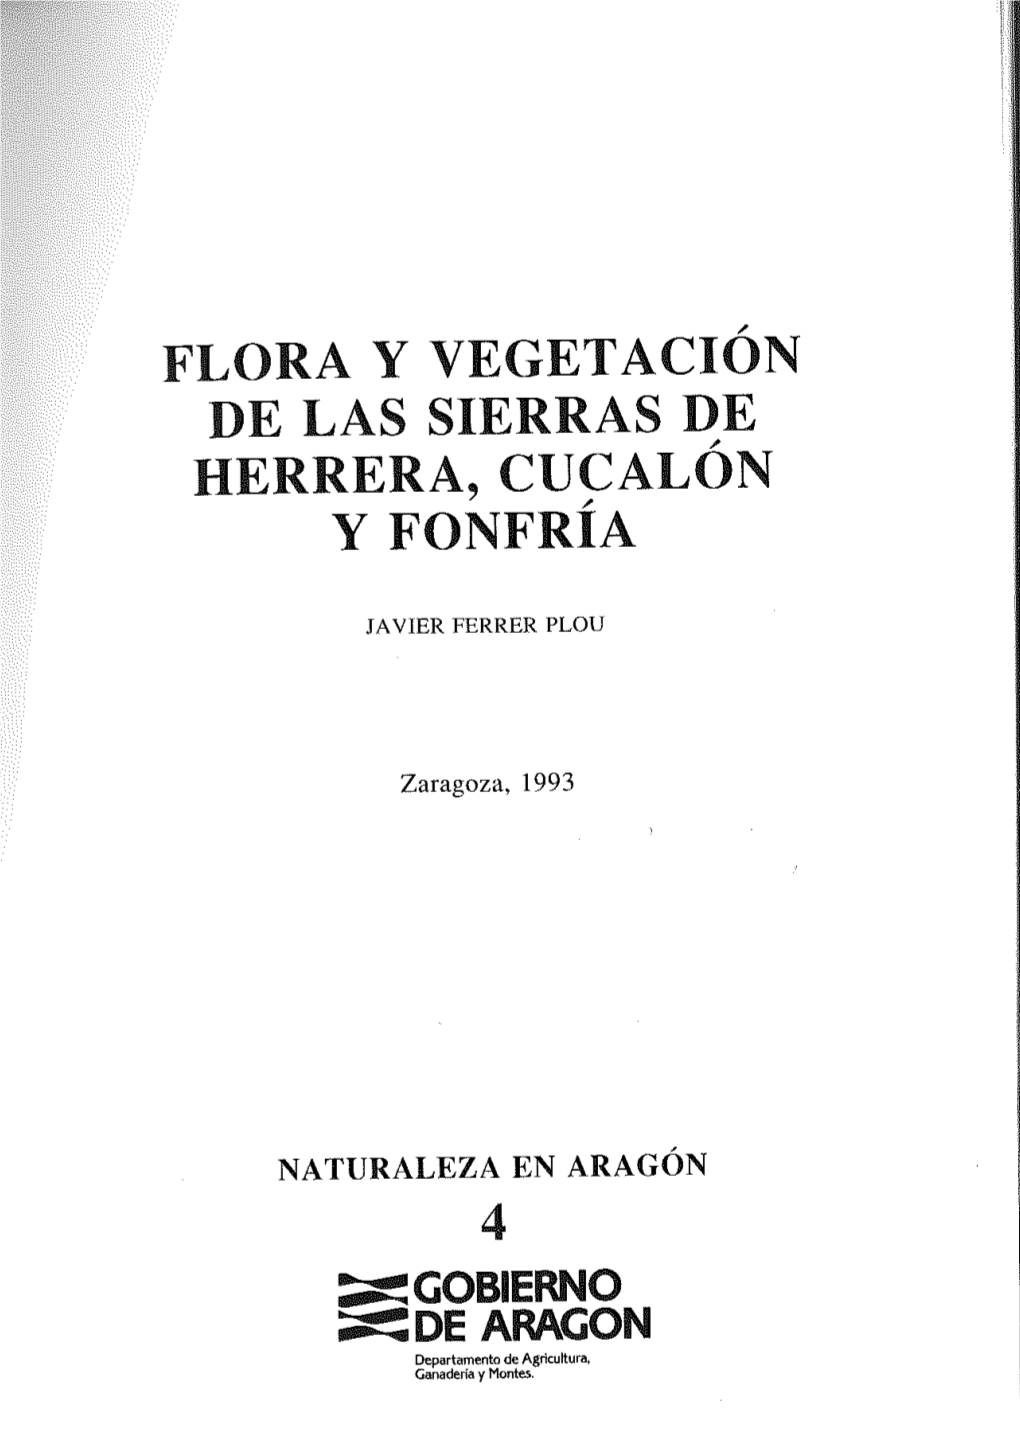 Flora Y Vegetación De Las Sierras De Cucalón Y Fonfría. VEGETACIÓN